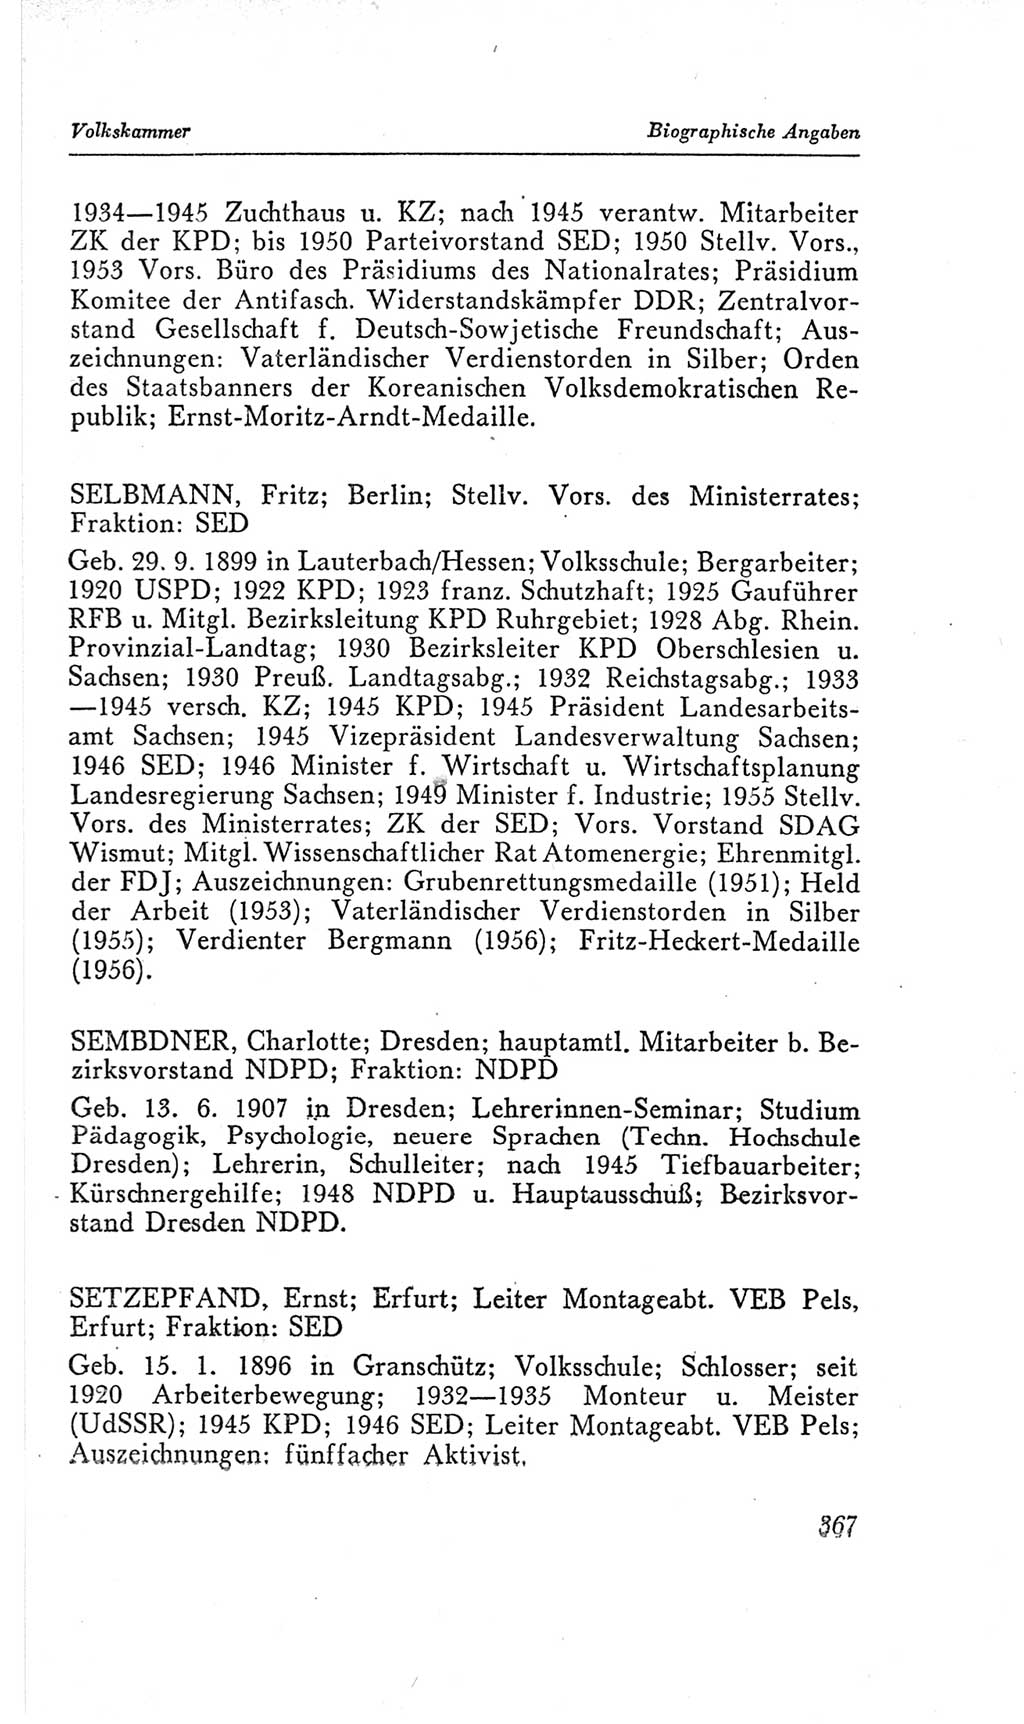 Handbuch der Volkskammer (VK) der Deutschen Demokratischen Republik (DDR), 2. Wahlperiode 1954-1958, Seite 367 (Hdb. VK. DDR, 2. WP. 1954-1958, S. 367)